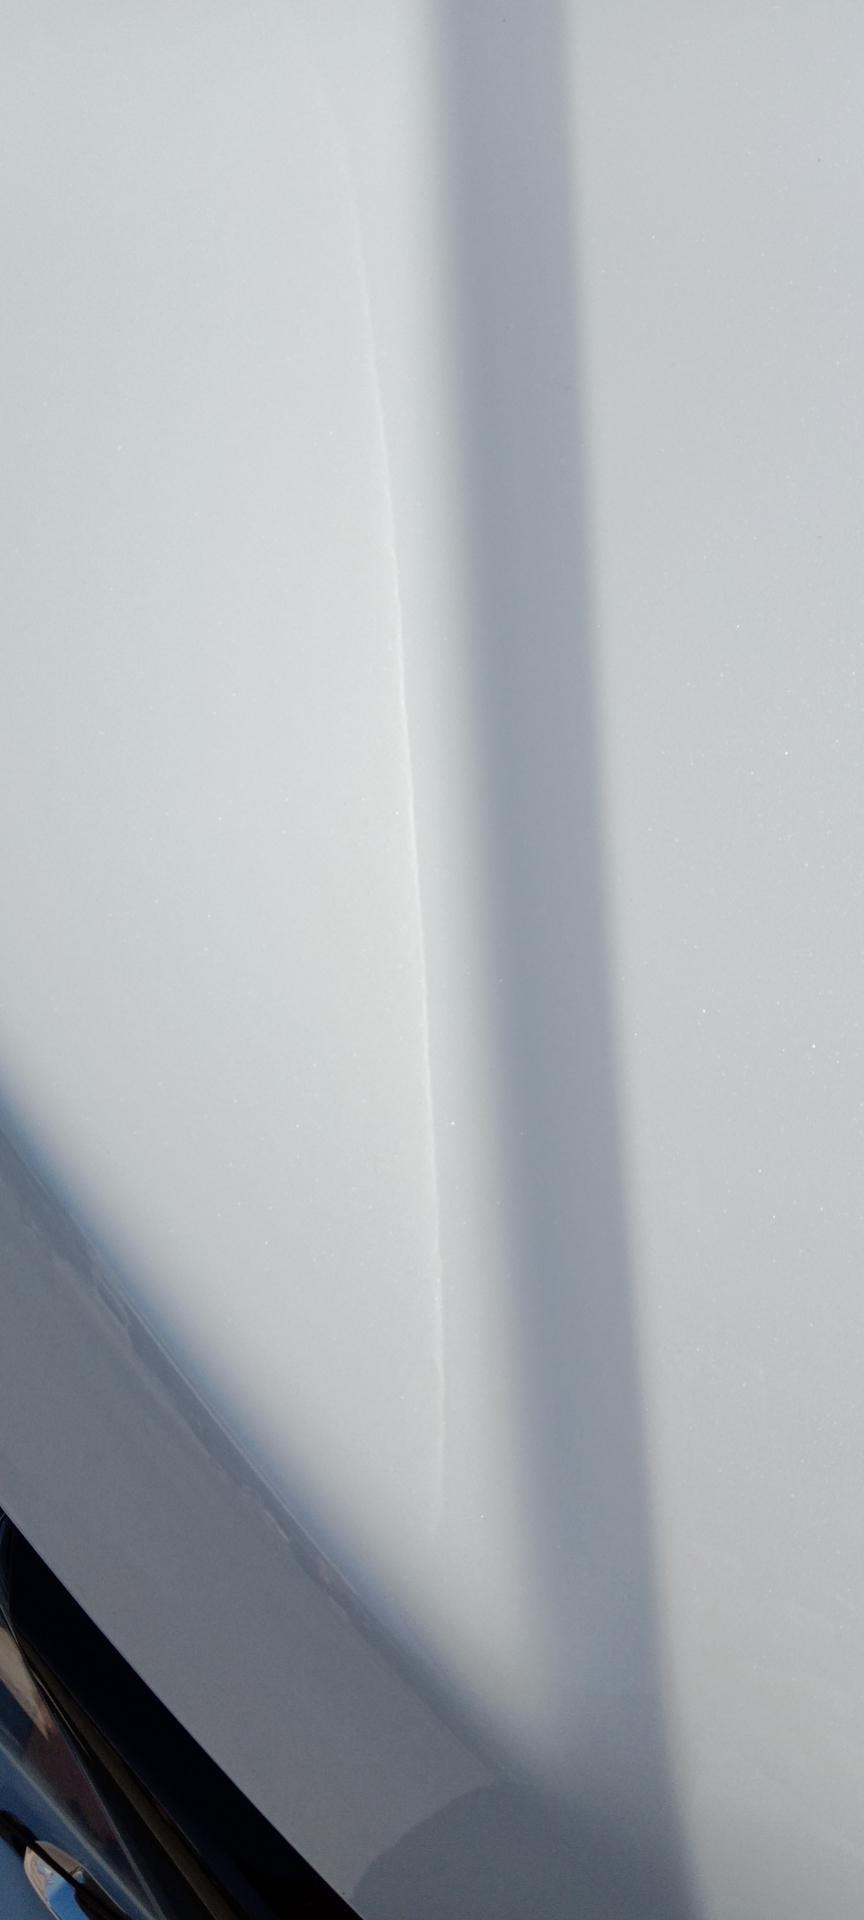 本田xr v 车友们，我今天把车放在太阳底下晒晒，发现在边的油漆有一条白线，右边的没有，你们有这种情况吗，求解